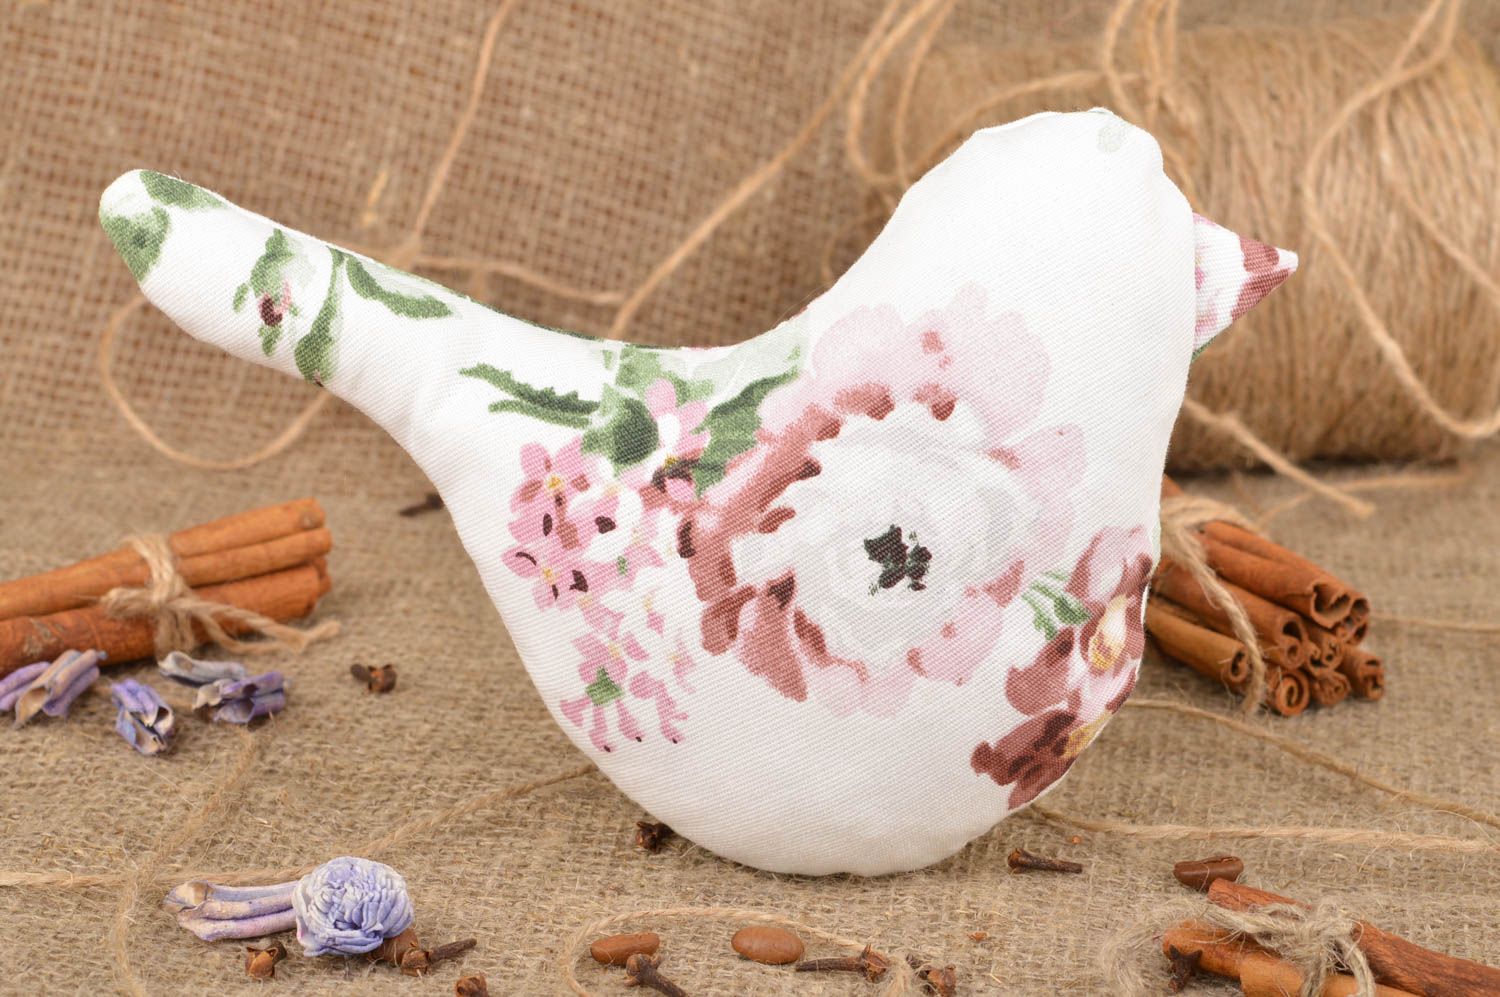 Мягкая игрушка ручной работы в виде птички белая с цветами маленькая хэнд мейд фото 1